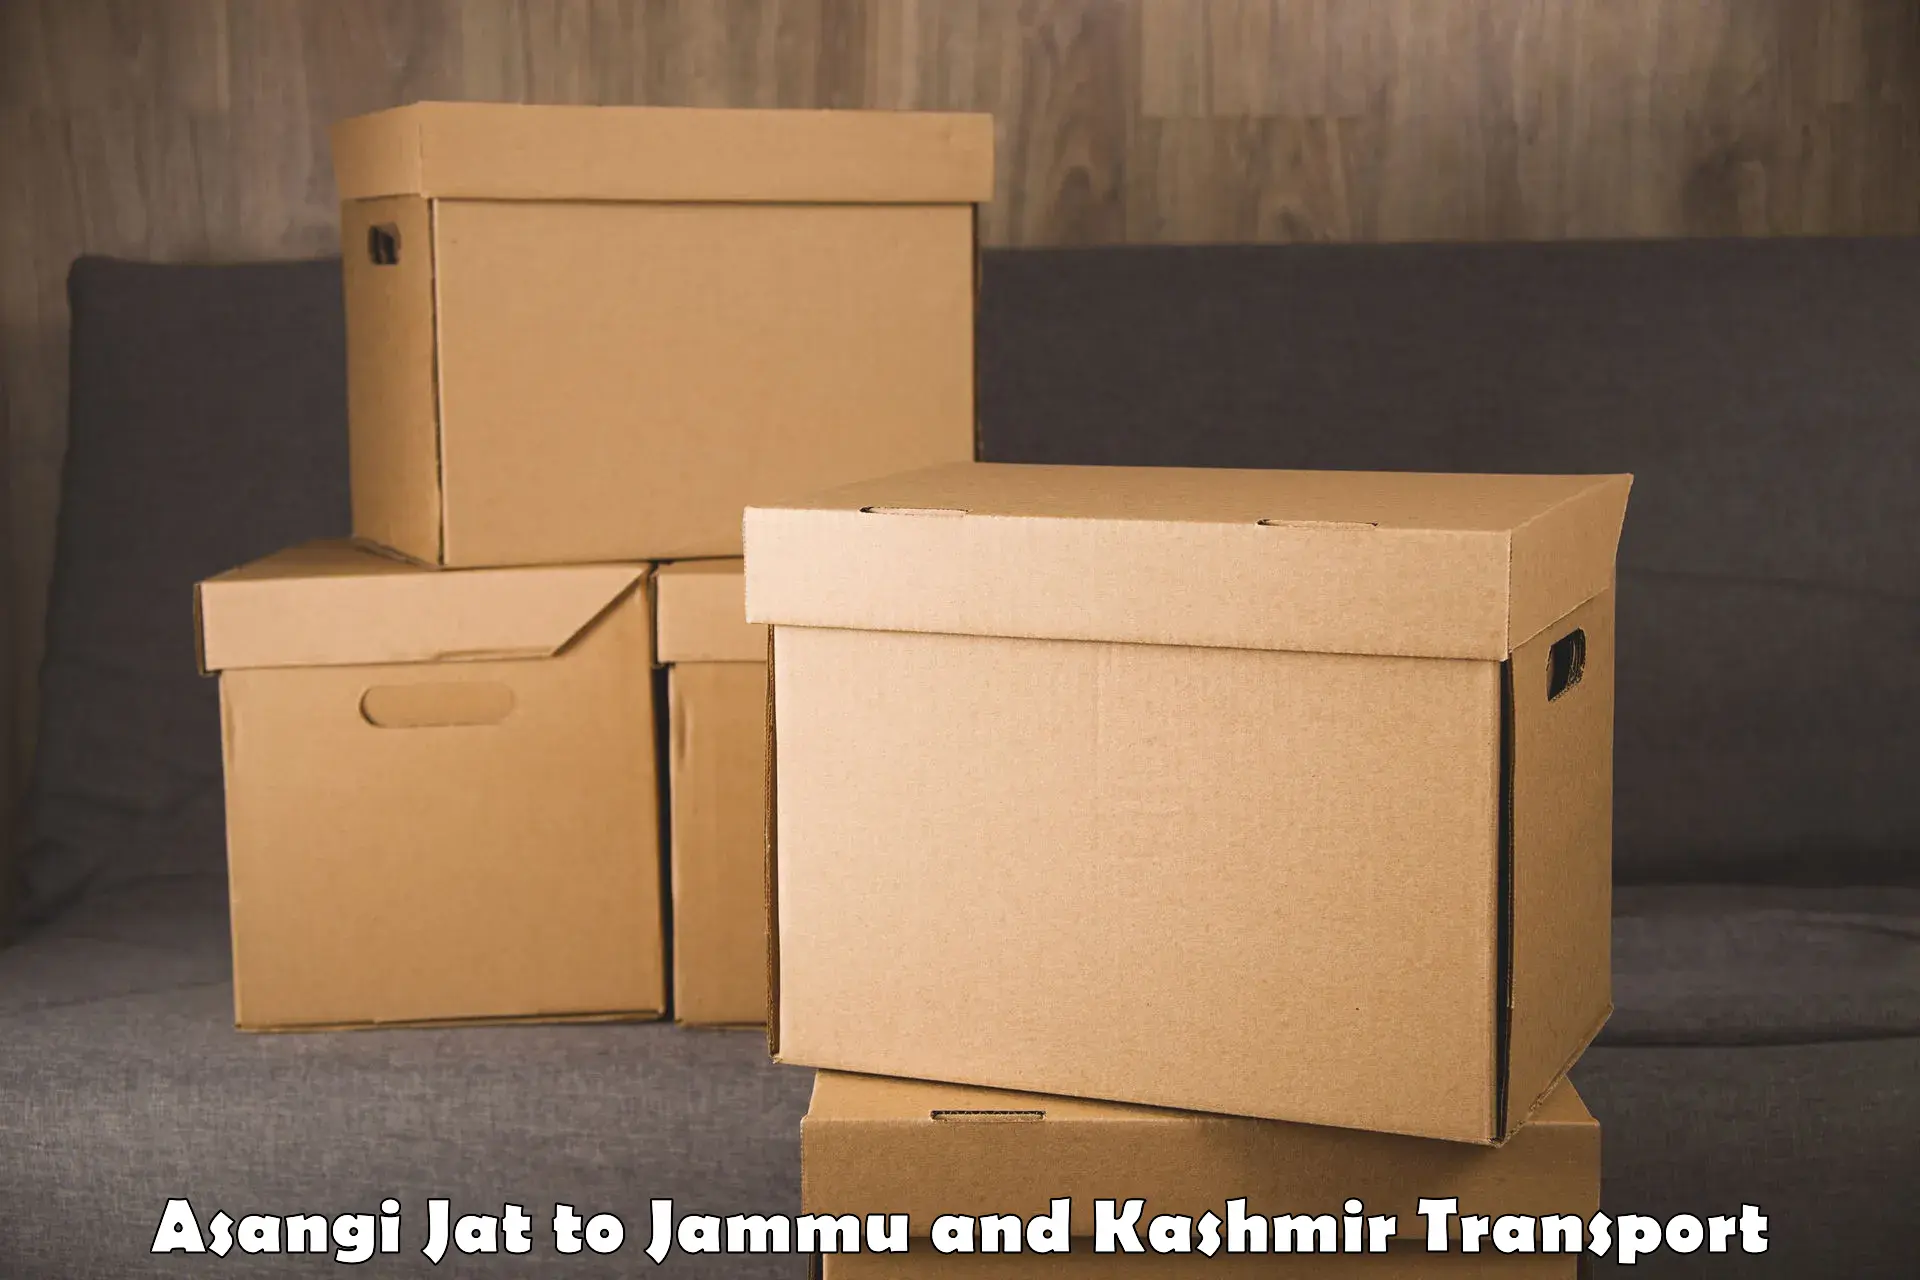 Container transport service Asangi Jat to Jammu